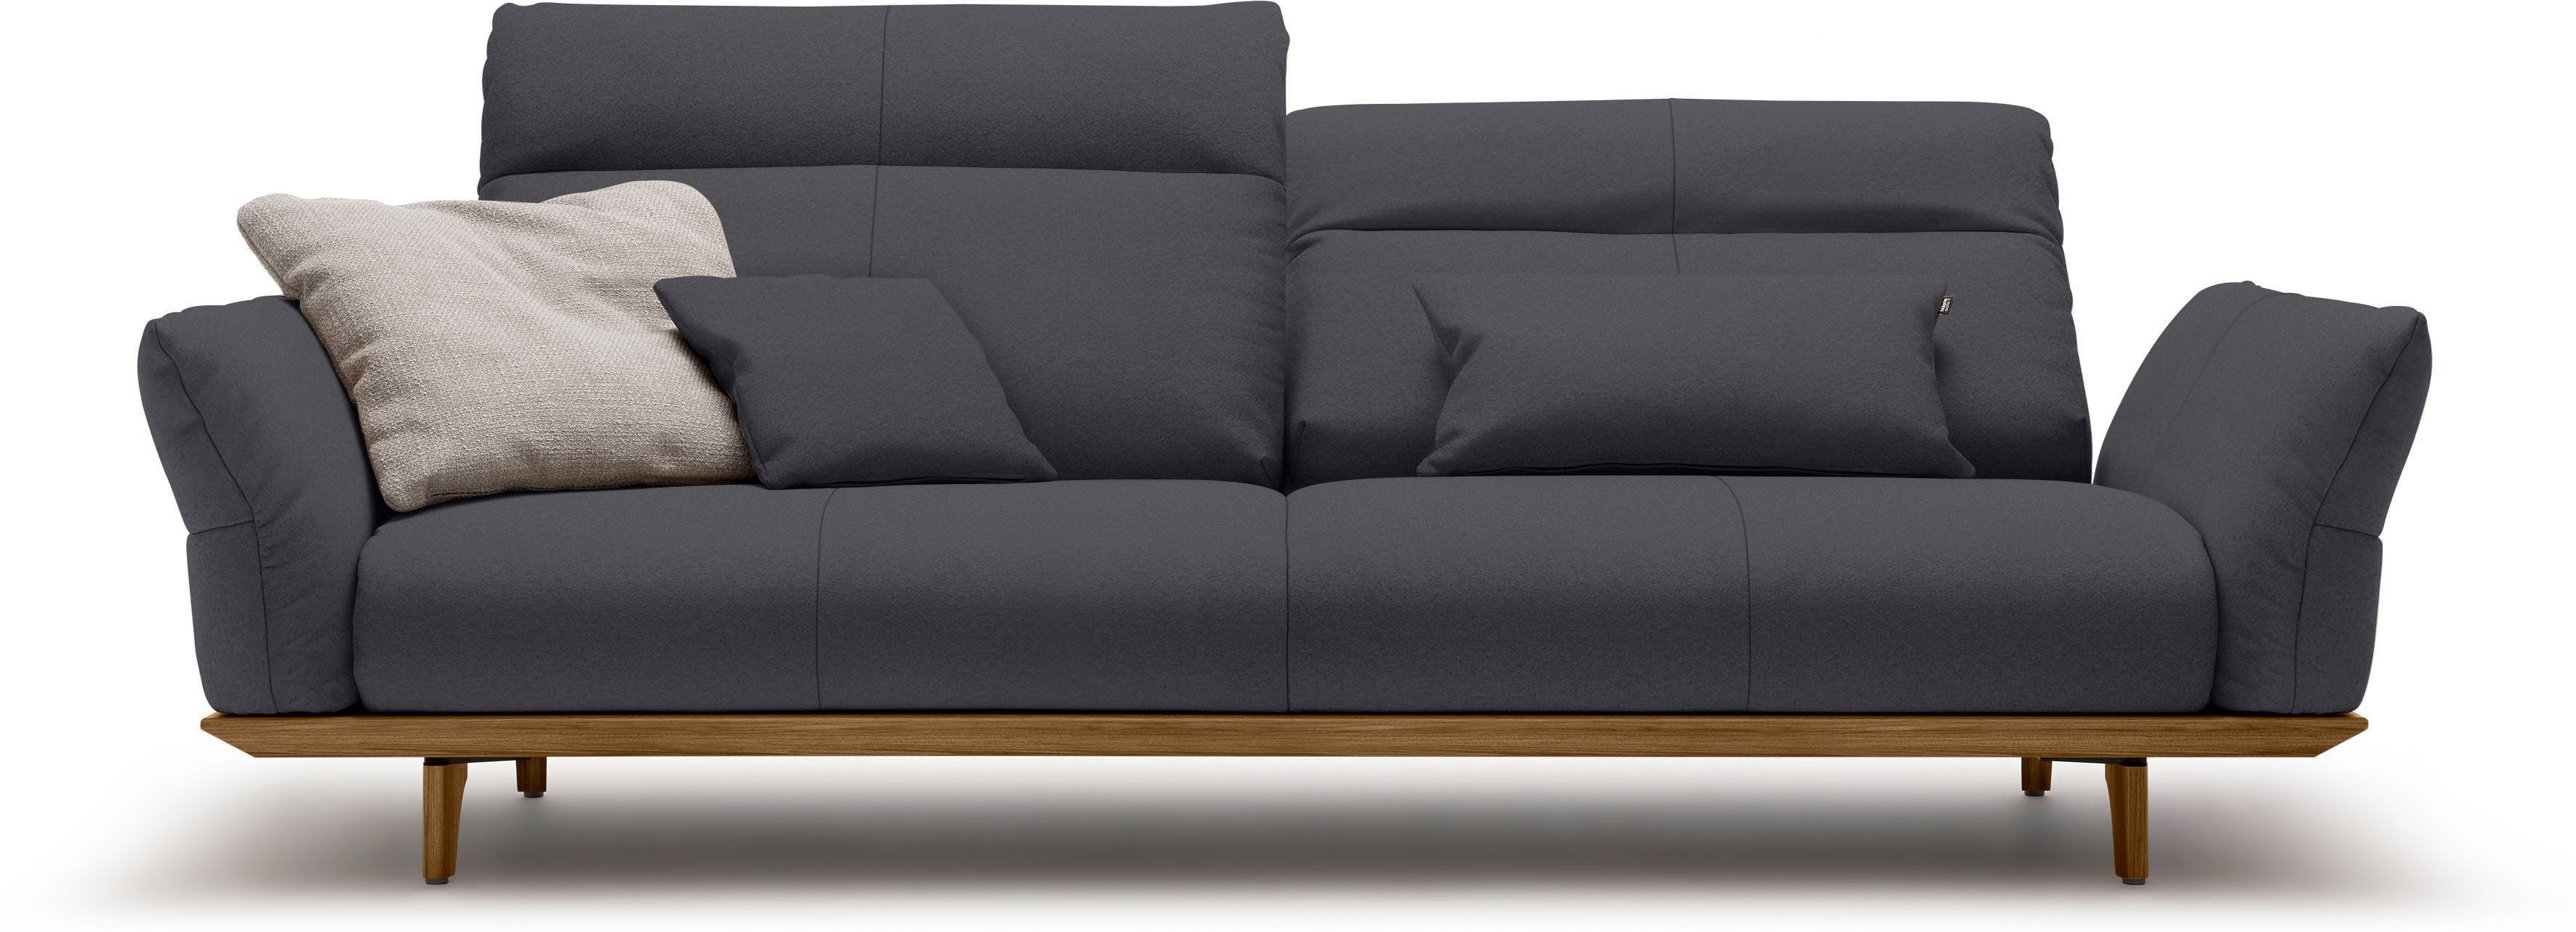 Nussbaum, Füße hs.460, Sockel sofa in und hülsta 228 cm 3,5-Sitzer Breite